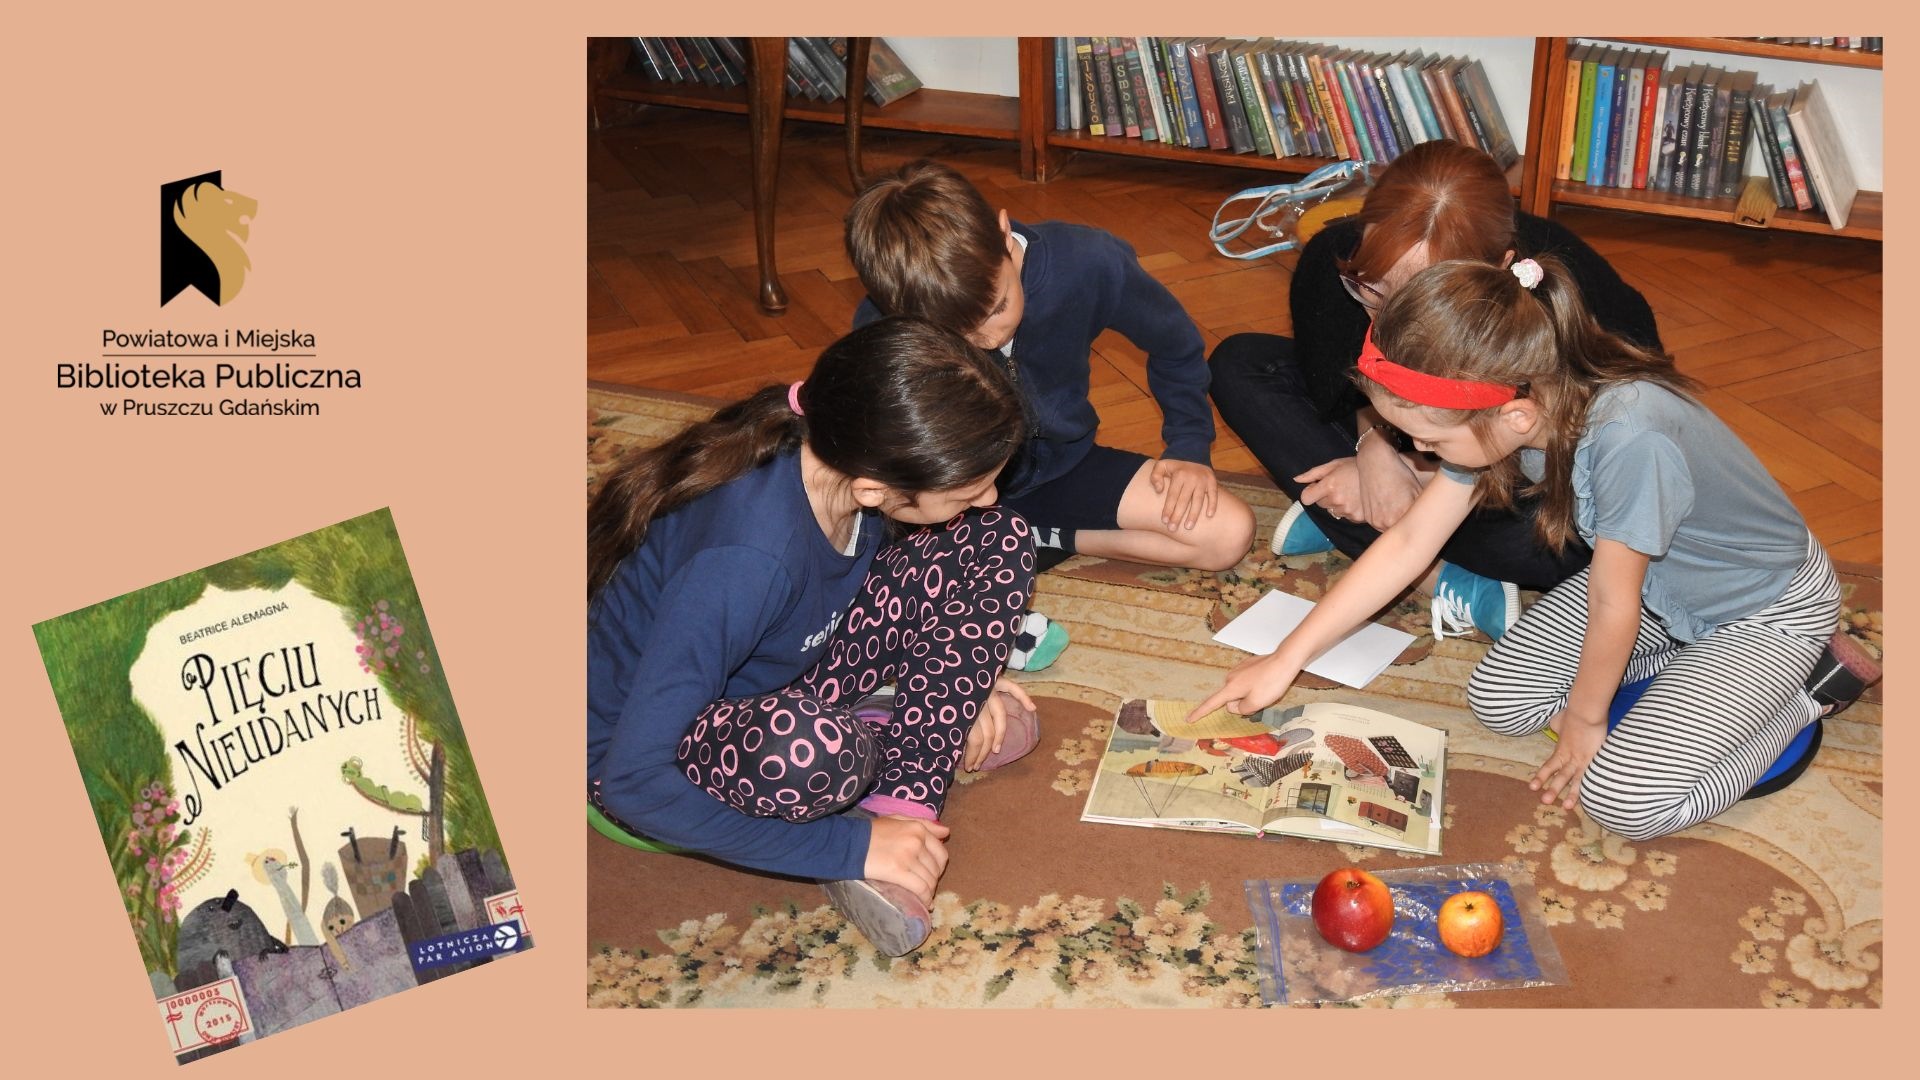 Troje dzieci oraz jedna osoba dorosła siedzą obok siebie na dywanie i pochylają się nad otwartą książką. Jedno dziecko wskazuje palcem na jakiś element w książce. Obok książki leży woreczek foliowy, na którym znajdują się dwa jabłka.